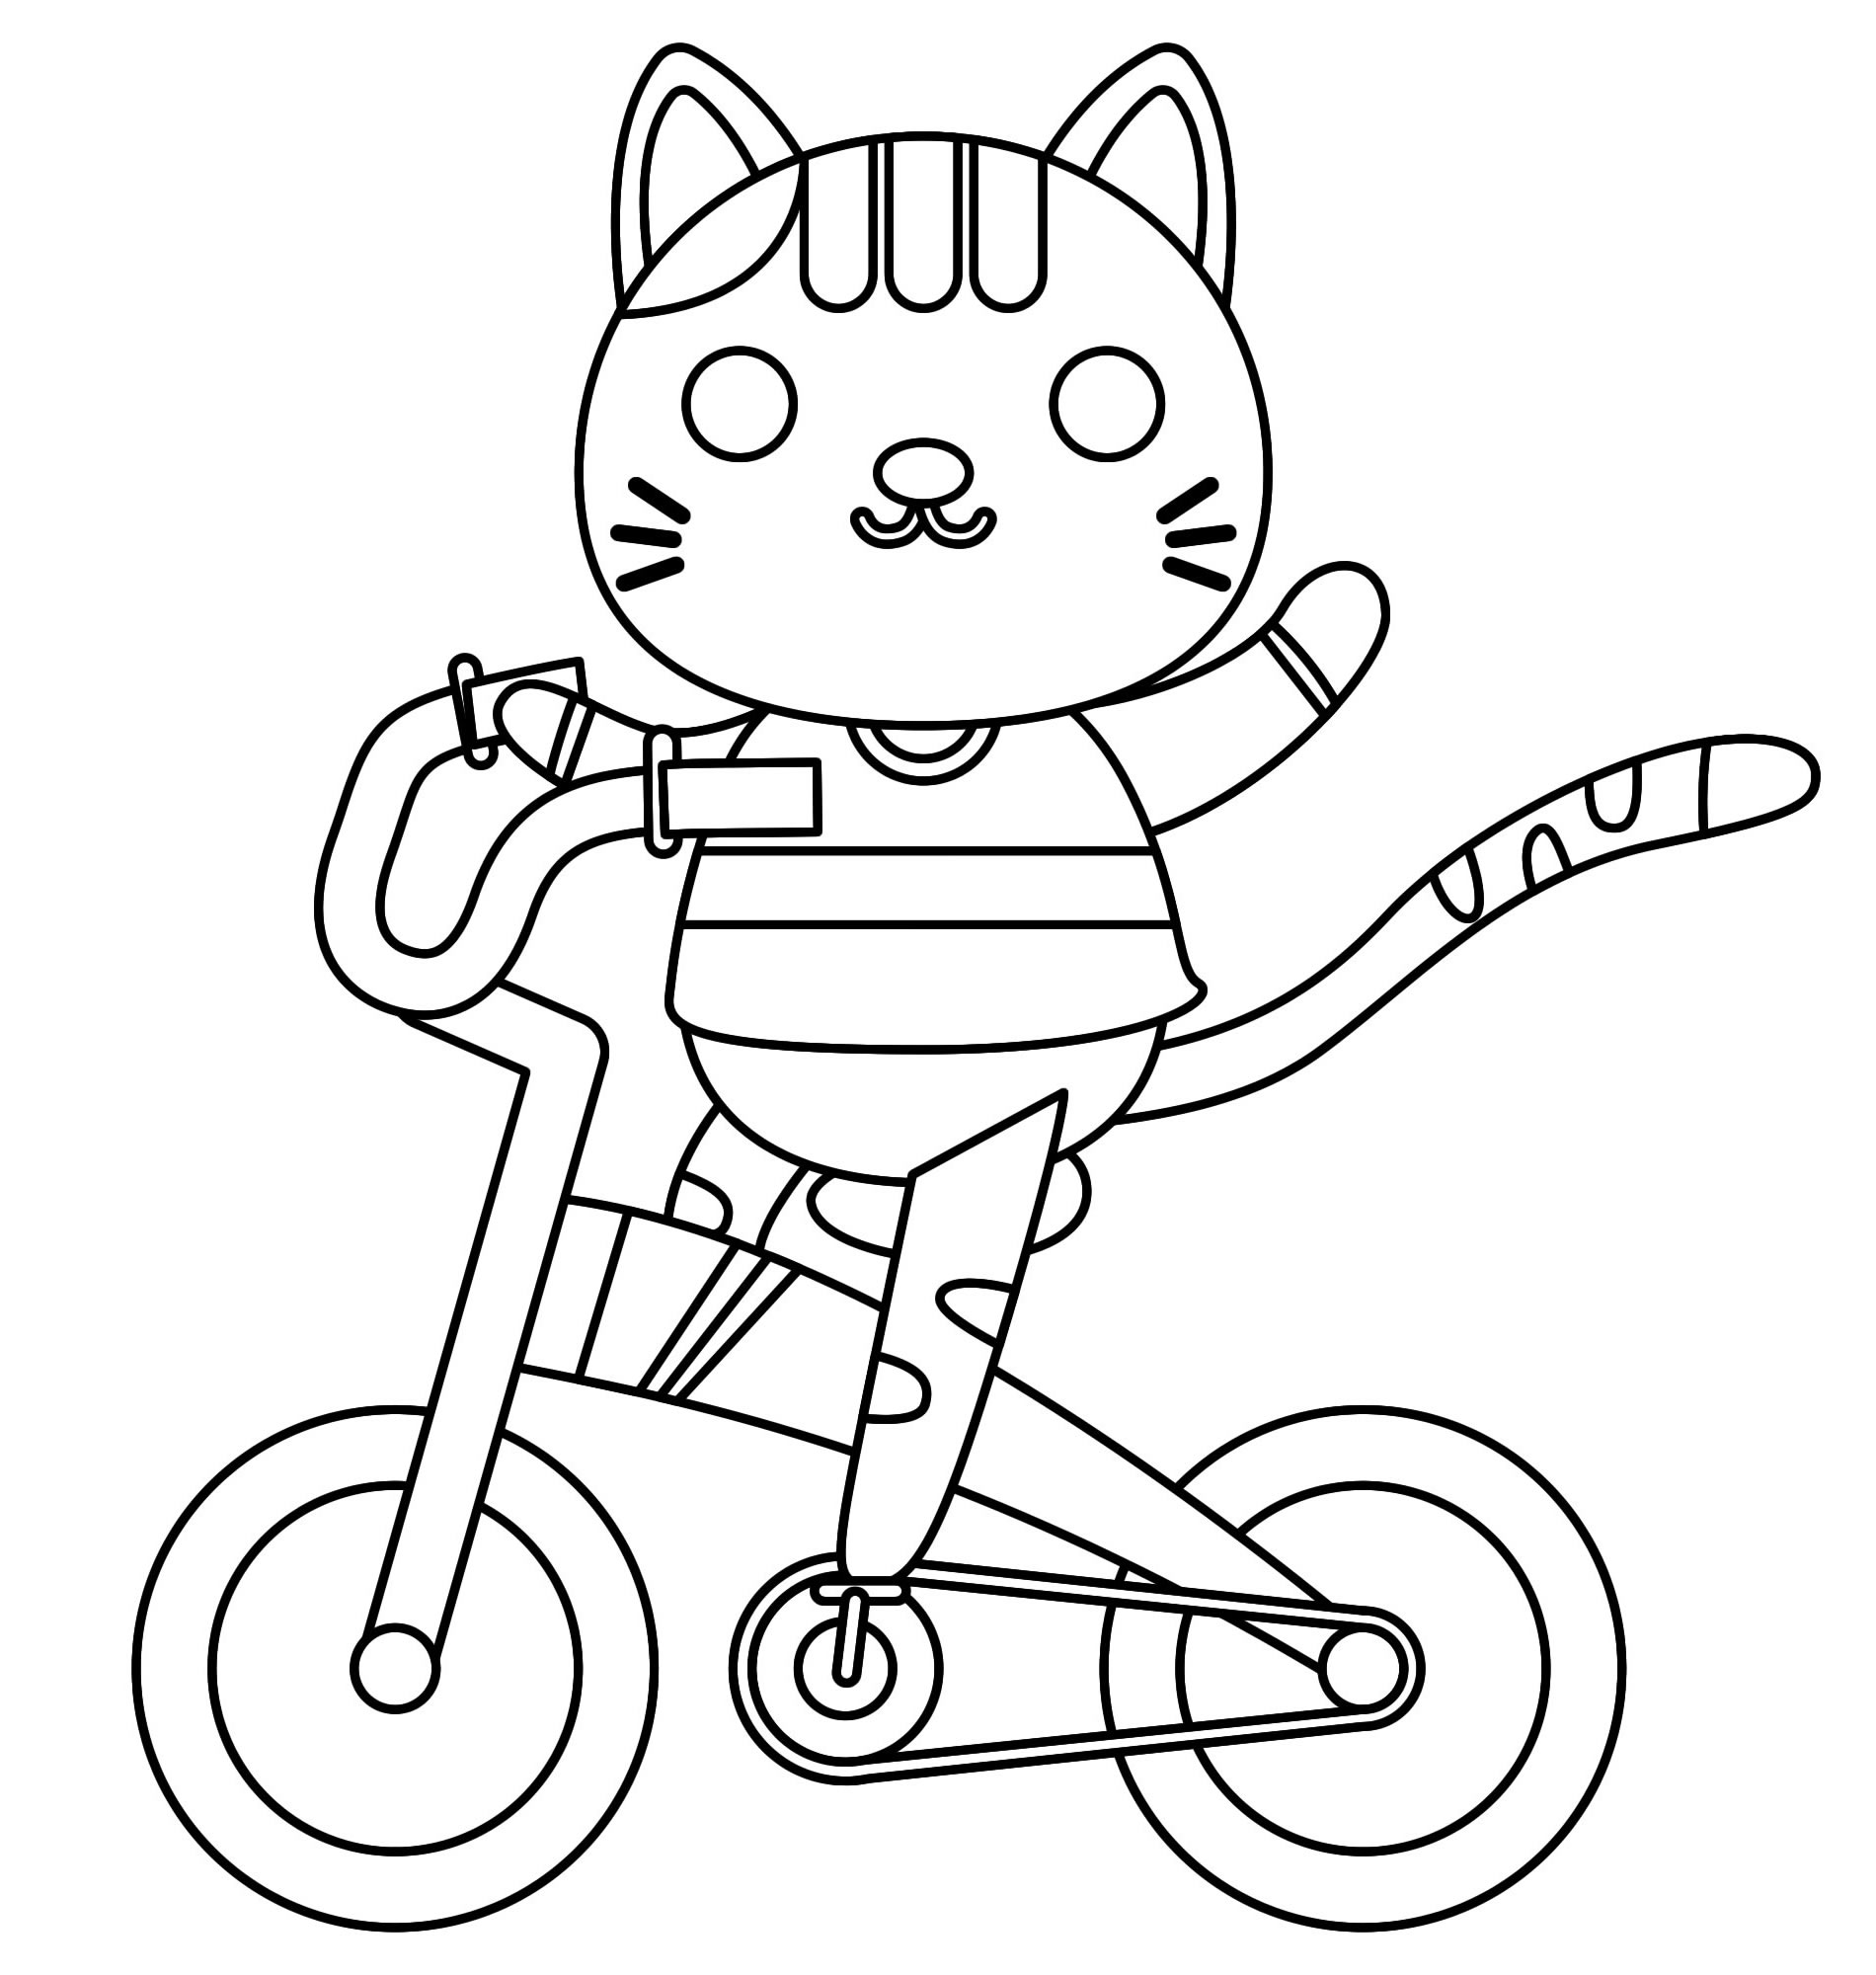 Кот на велосипеде раскраска для детей